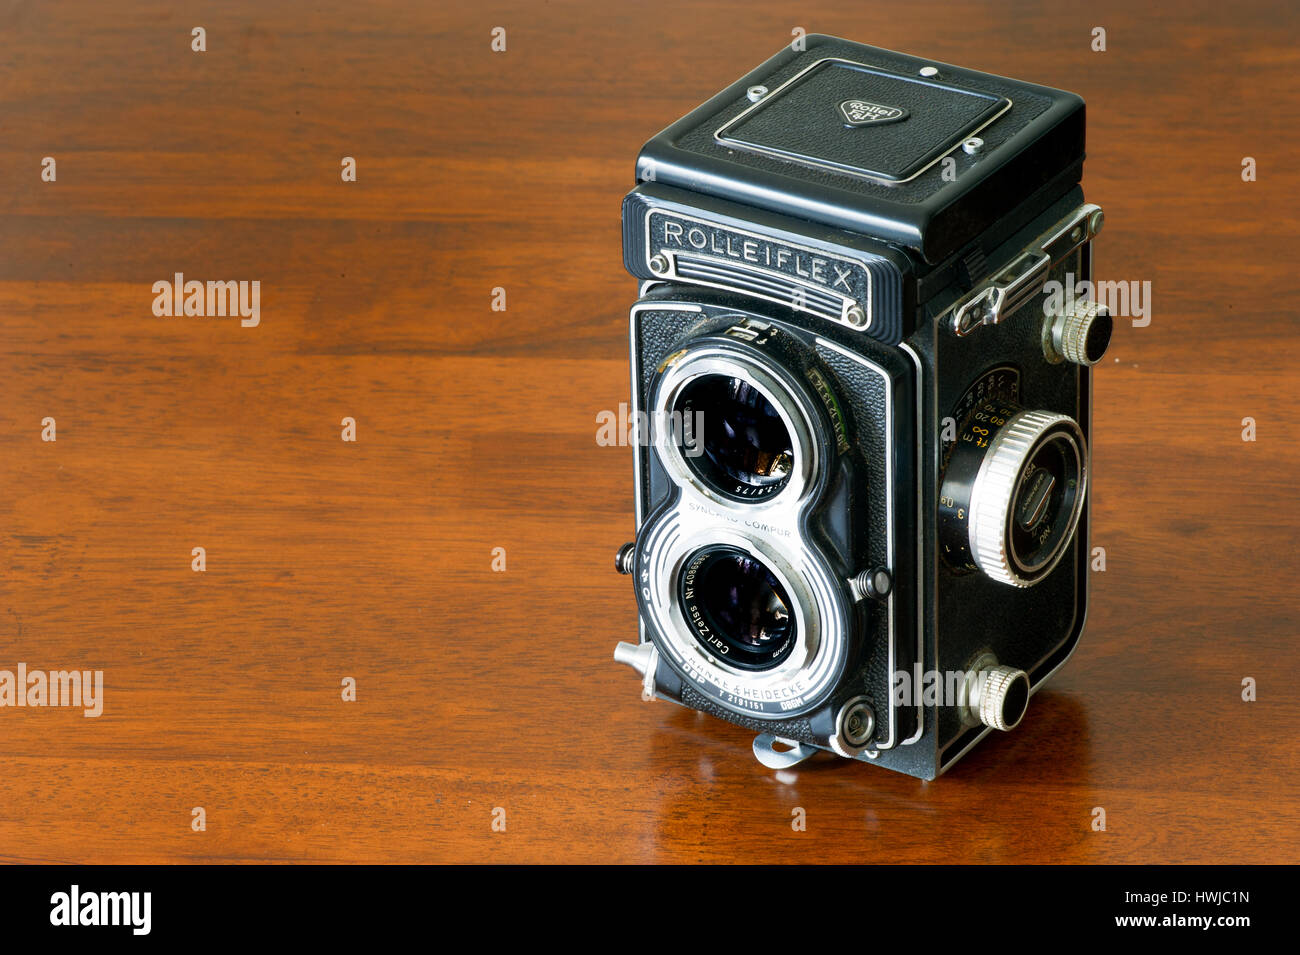 Coleccionable Vintage Rolleiflex bioptical cámara aún la vida sobre la mesa de madera Foto de stock